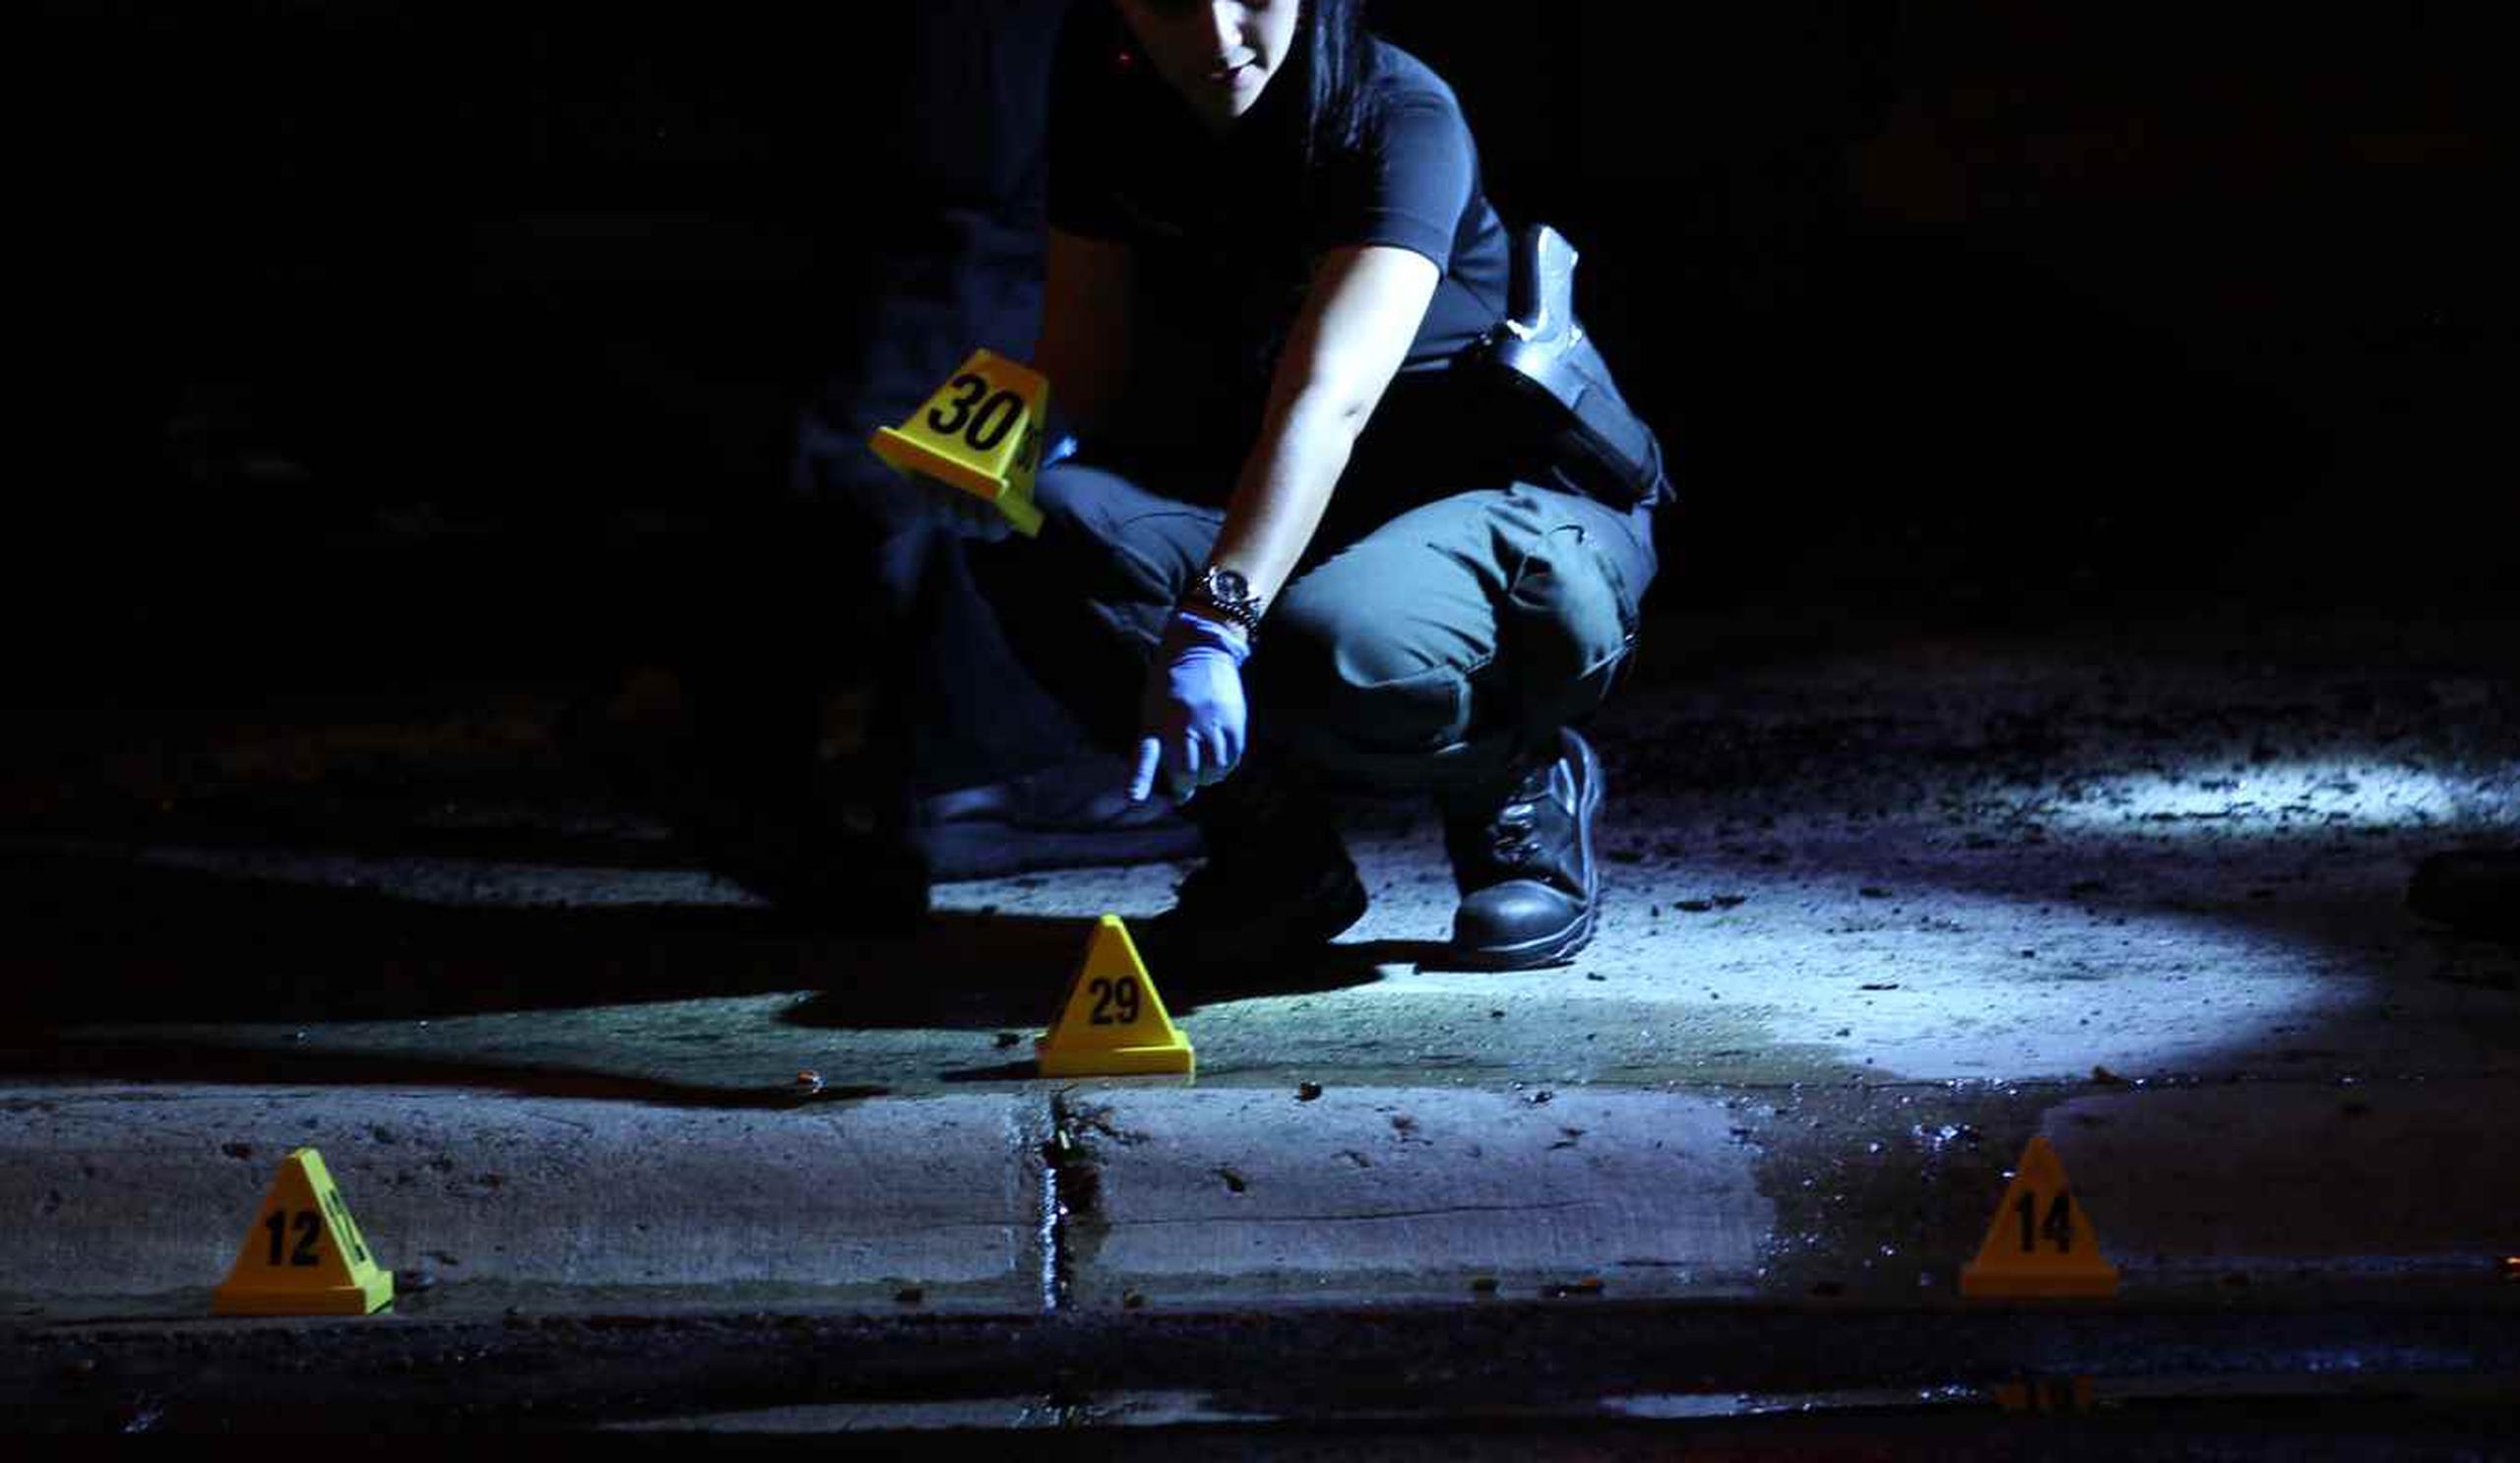 El cuerpo presentaba múltiples impactos de bala. La División de Homicidios de Ponce asumió la investigación.